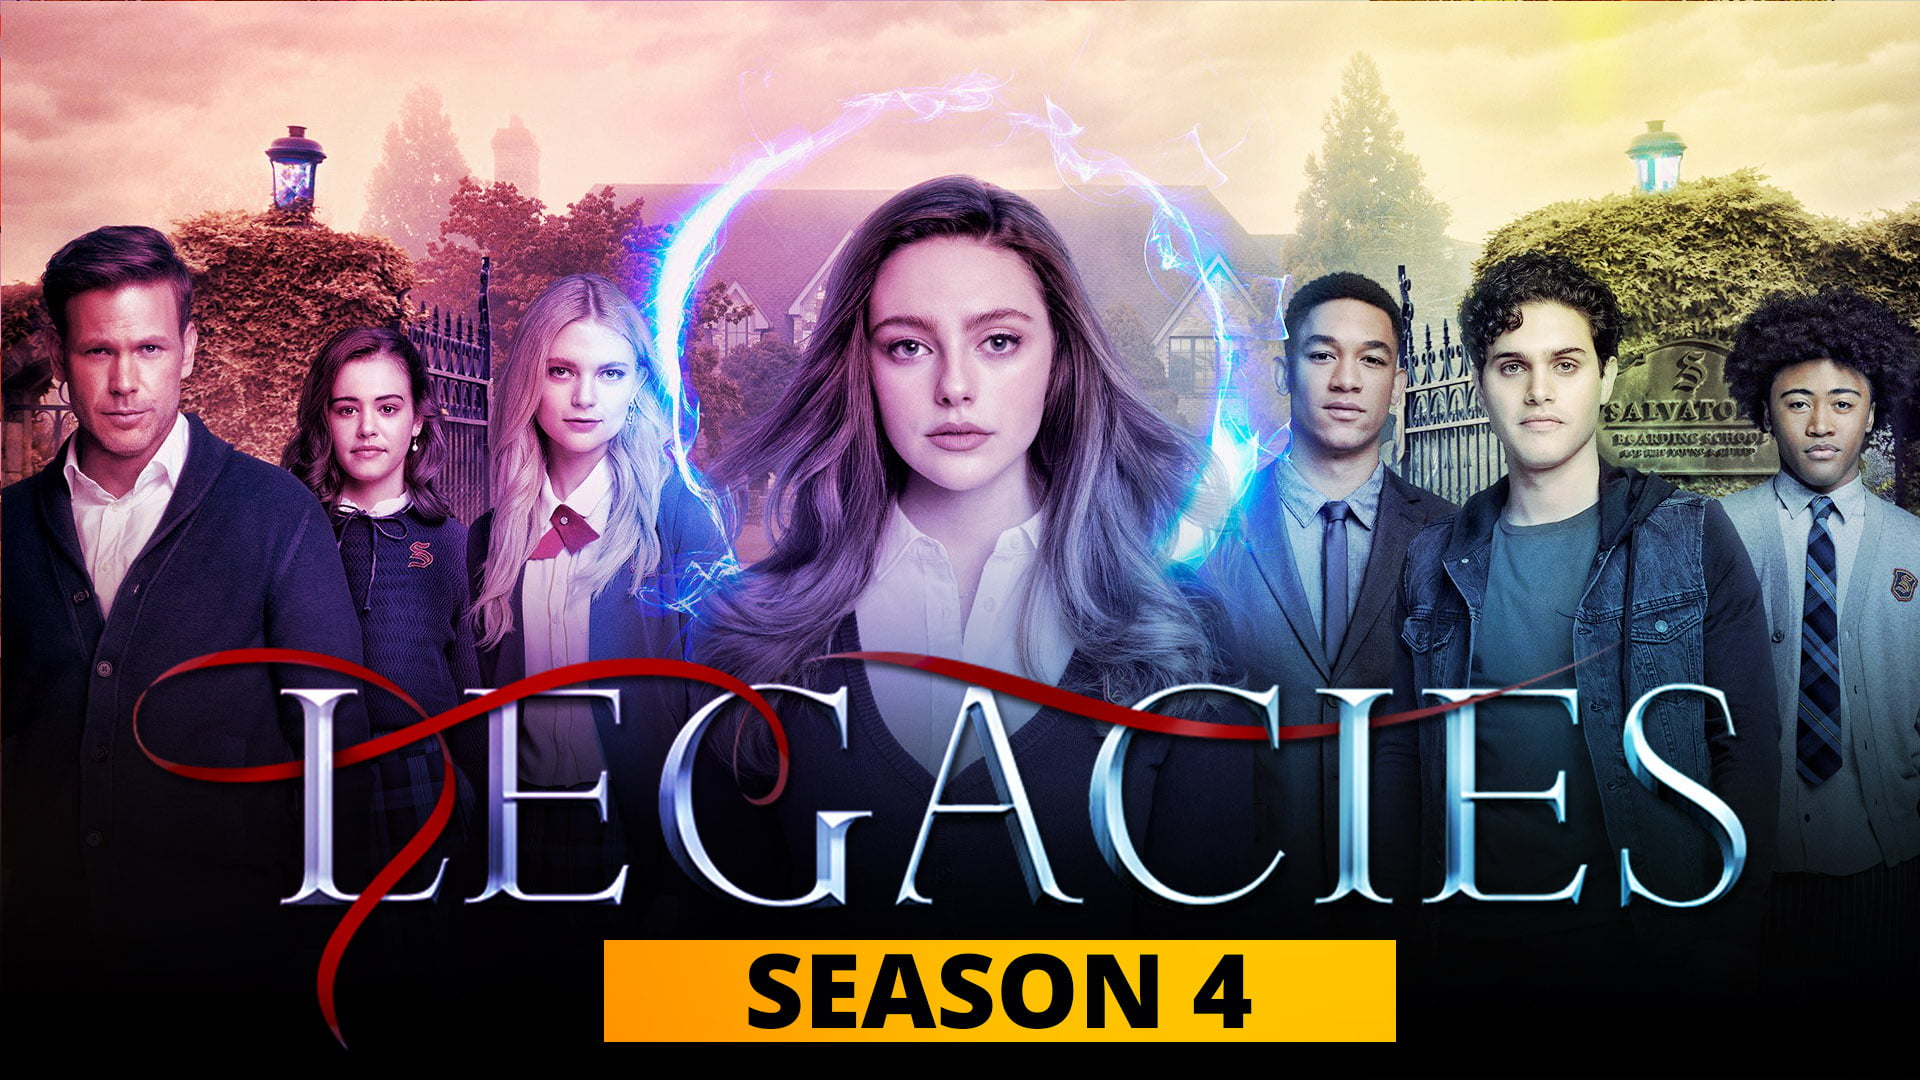 Legacies Season 4: October 14 Release Date Confirmed - The Teal Mango